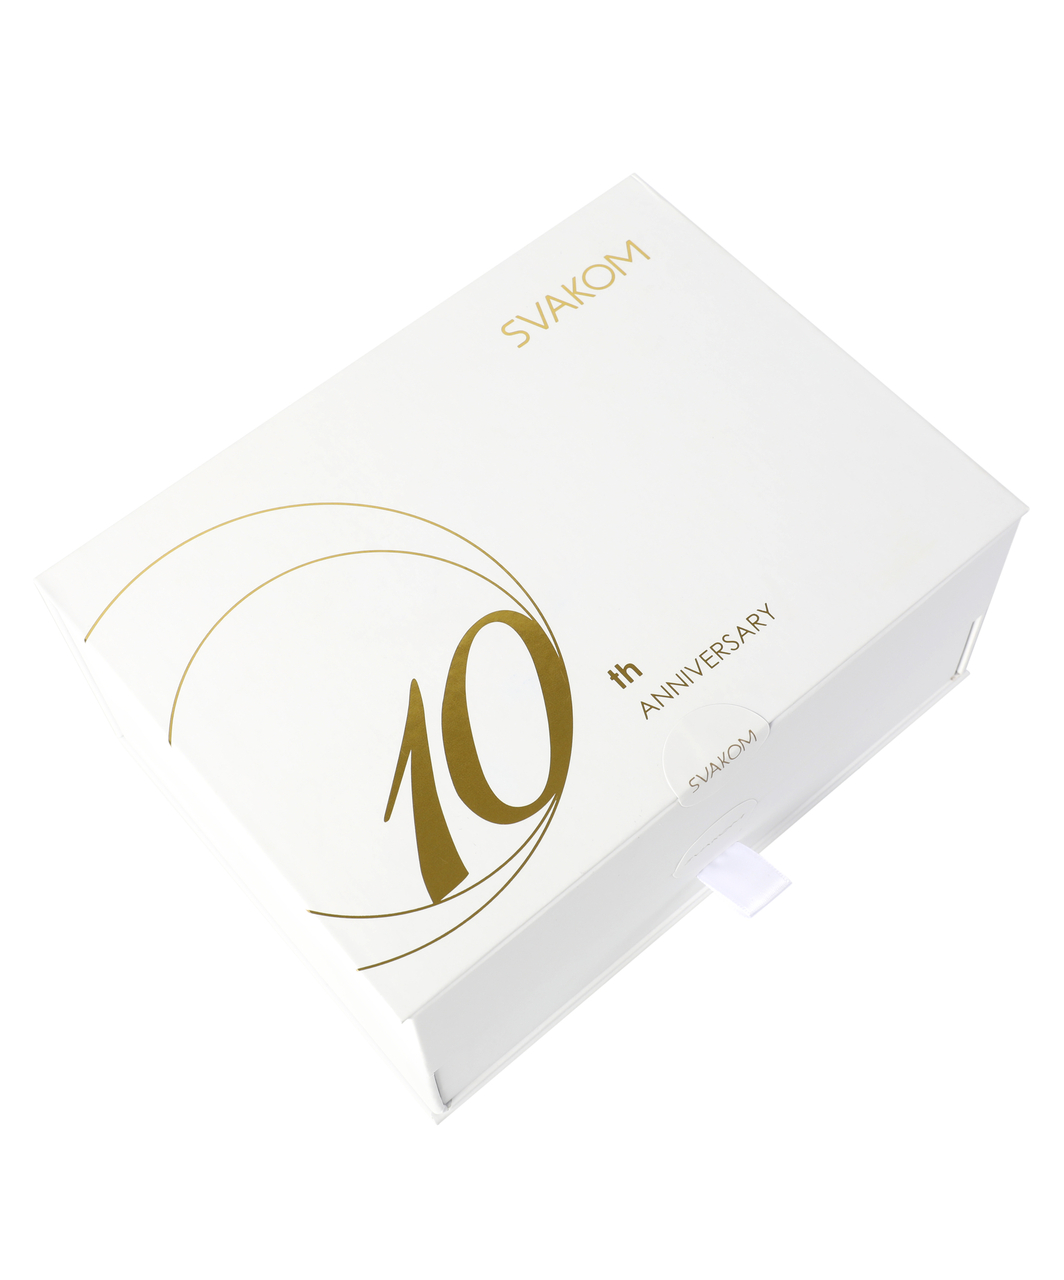 Svakom 10th Anniversary Pleasure Box